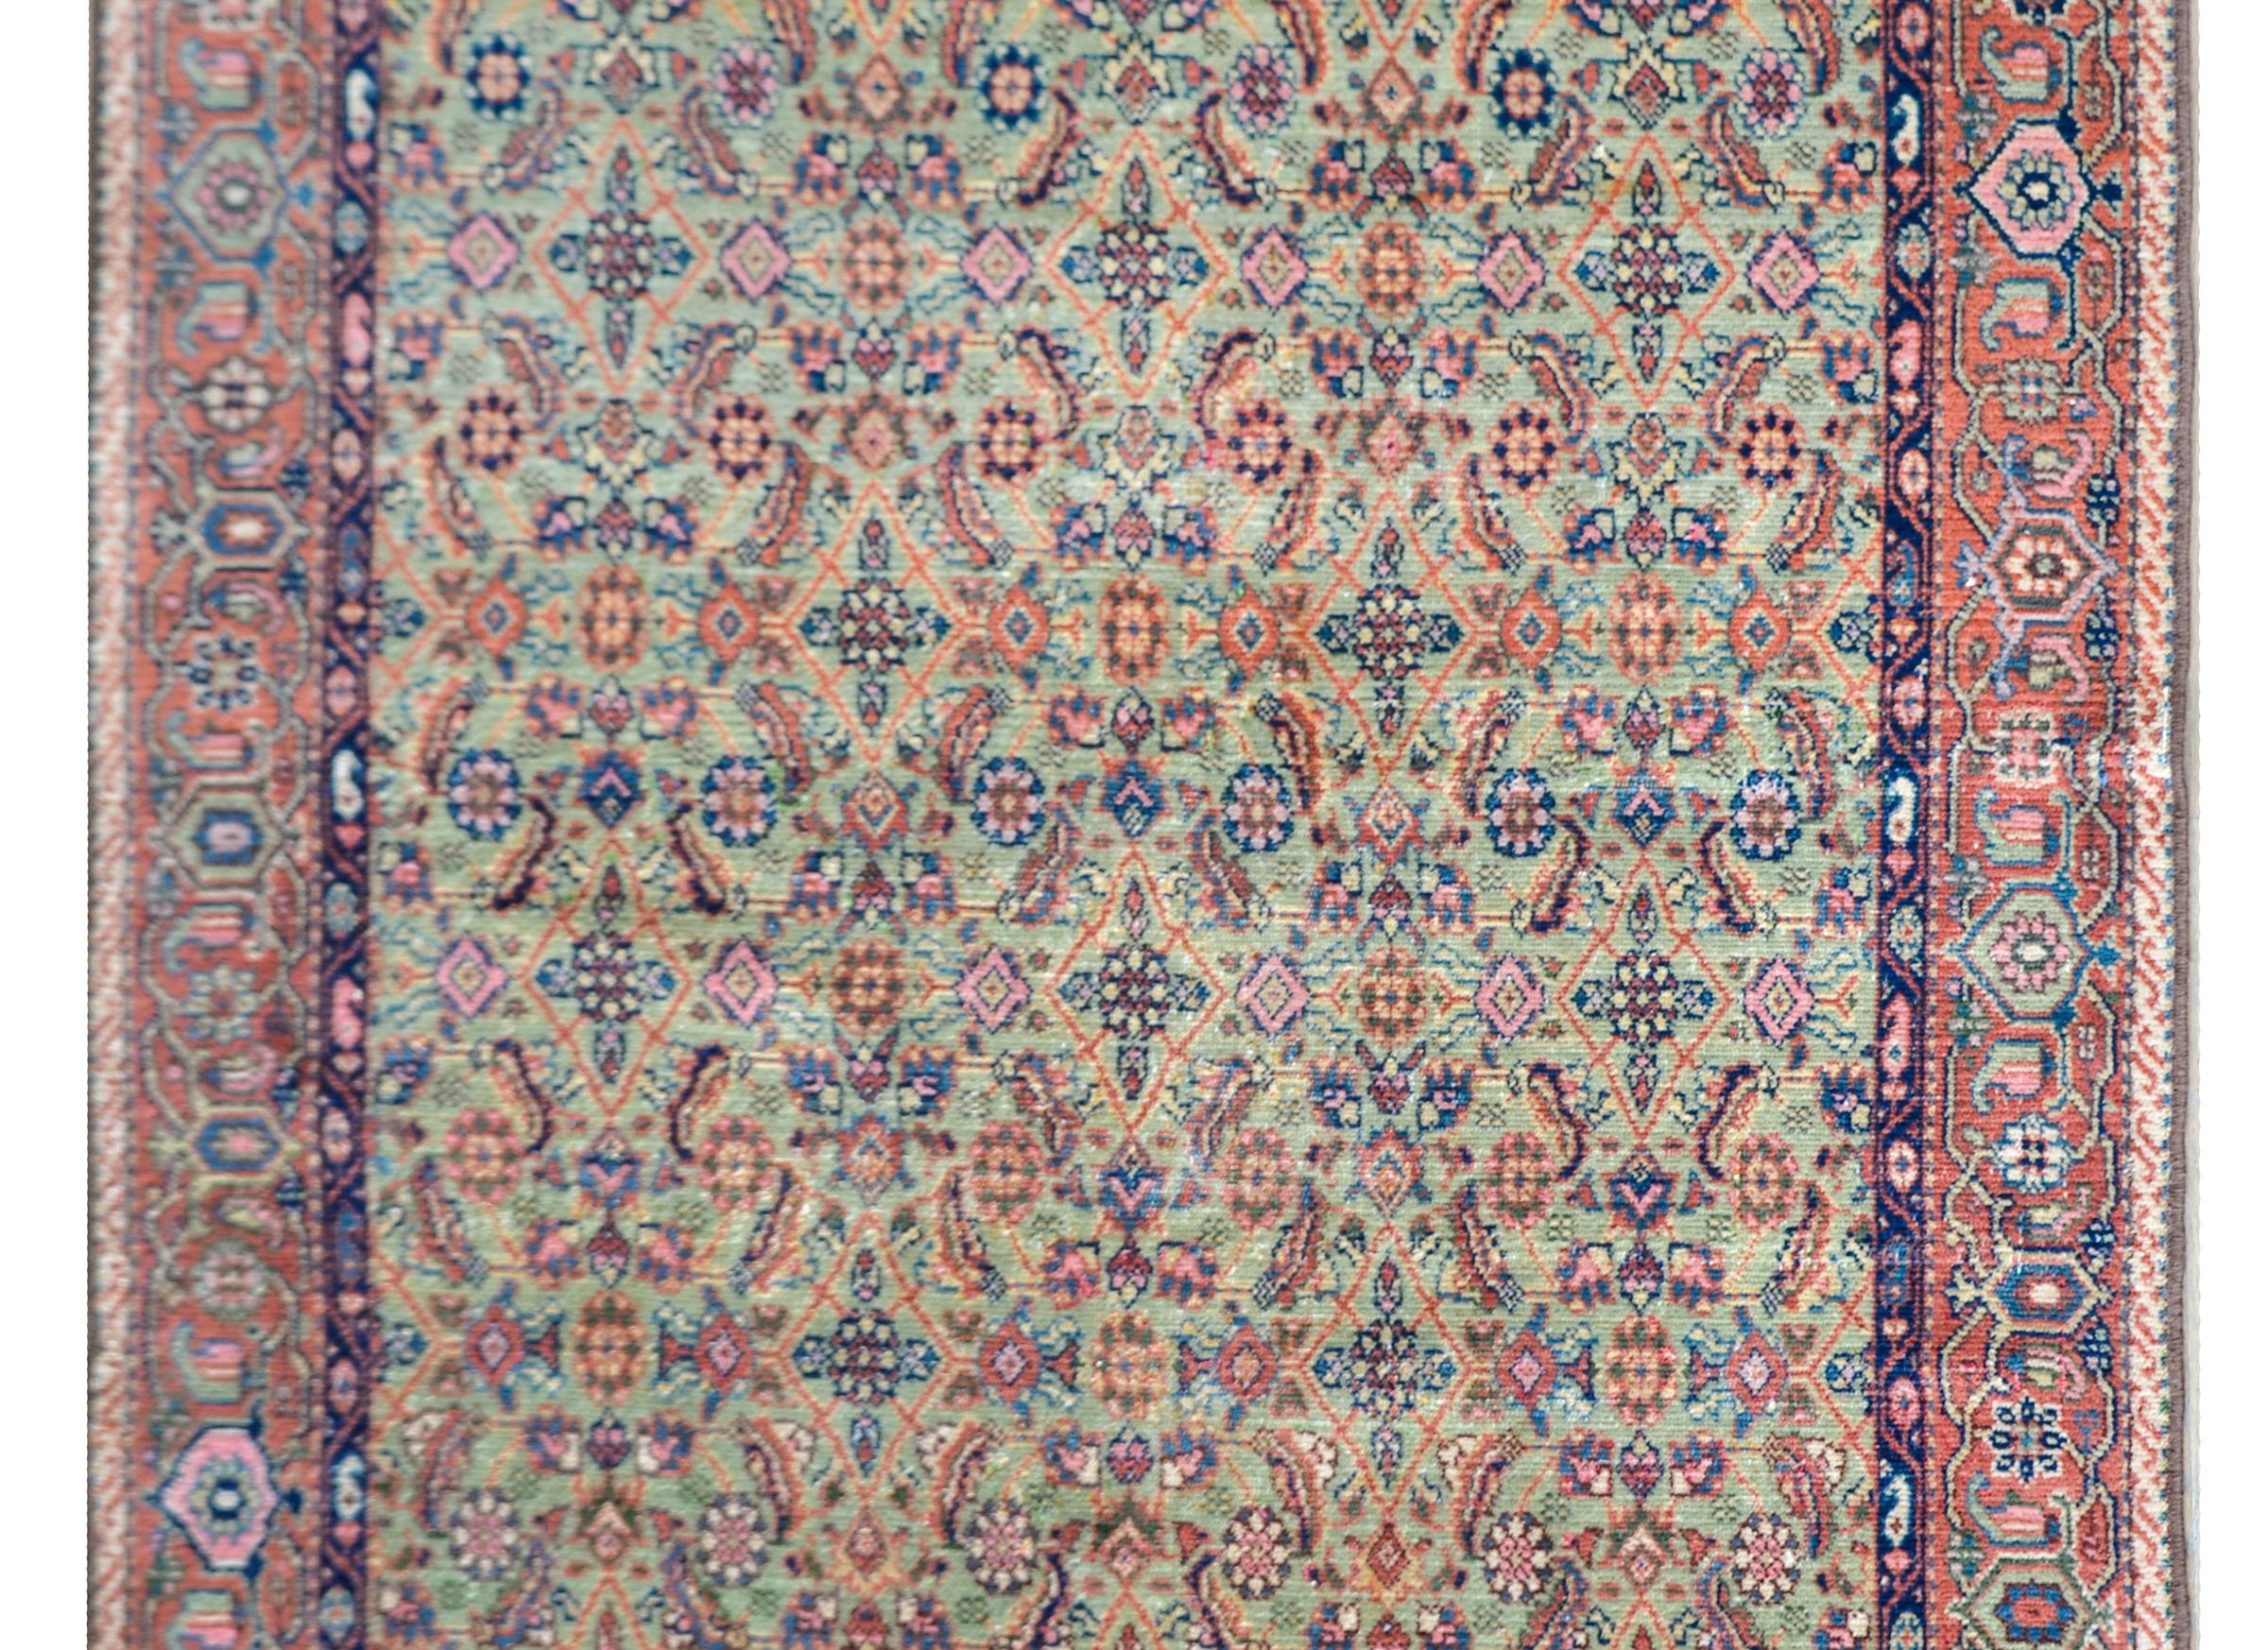 Ein schöner persischer Sultanabad-Teppich aus dem frühen 20. Jahrhundert mit einem Allover-Gitter aus Blumen und Blättern in Orange, Gold, Rosa und Indigo vor einem hellgrünen Hintergrund, umgeben von einer einfachen Bordüre mit einem stilisierten